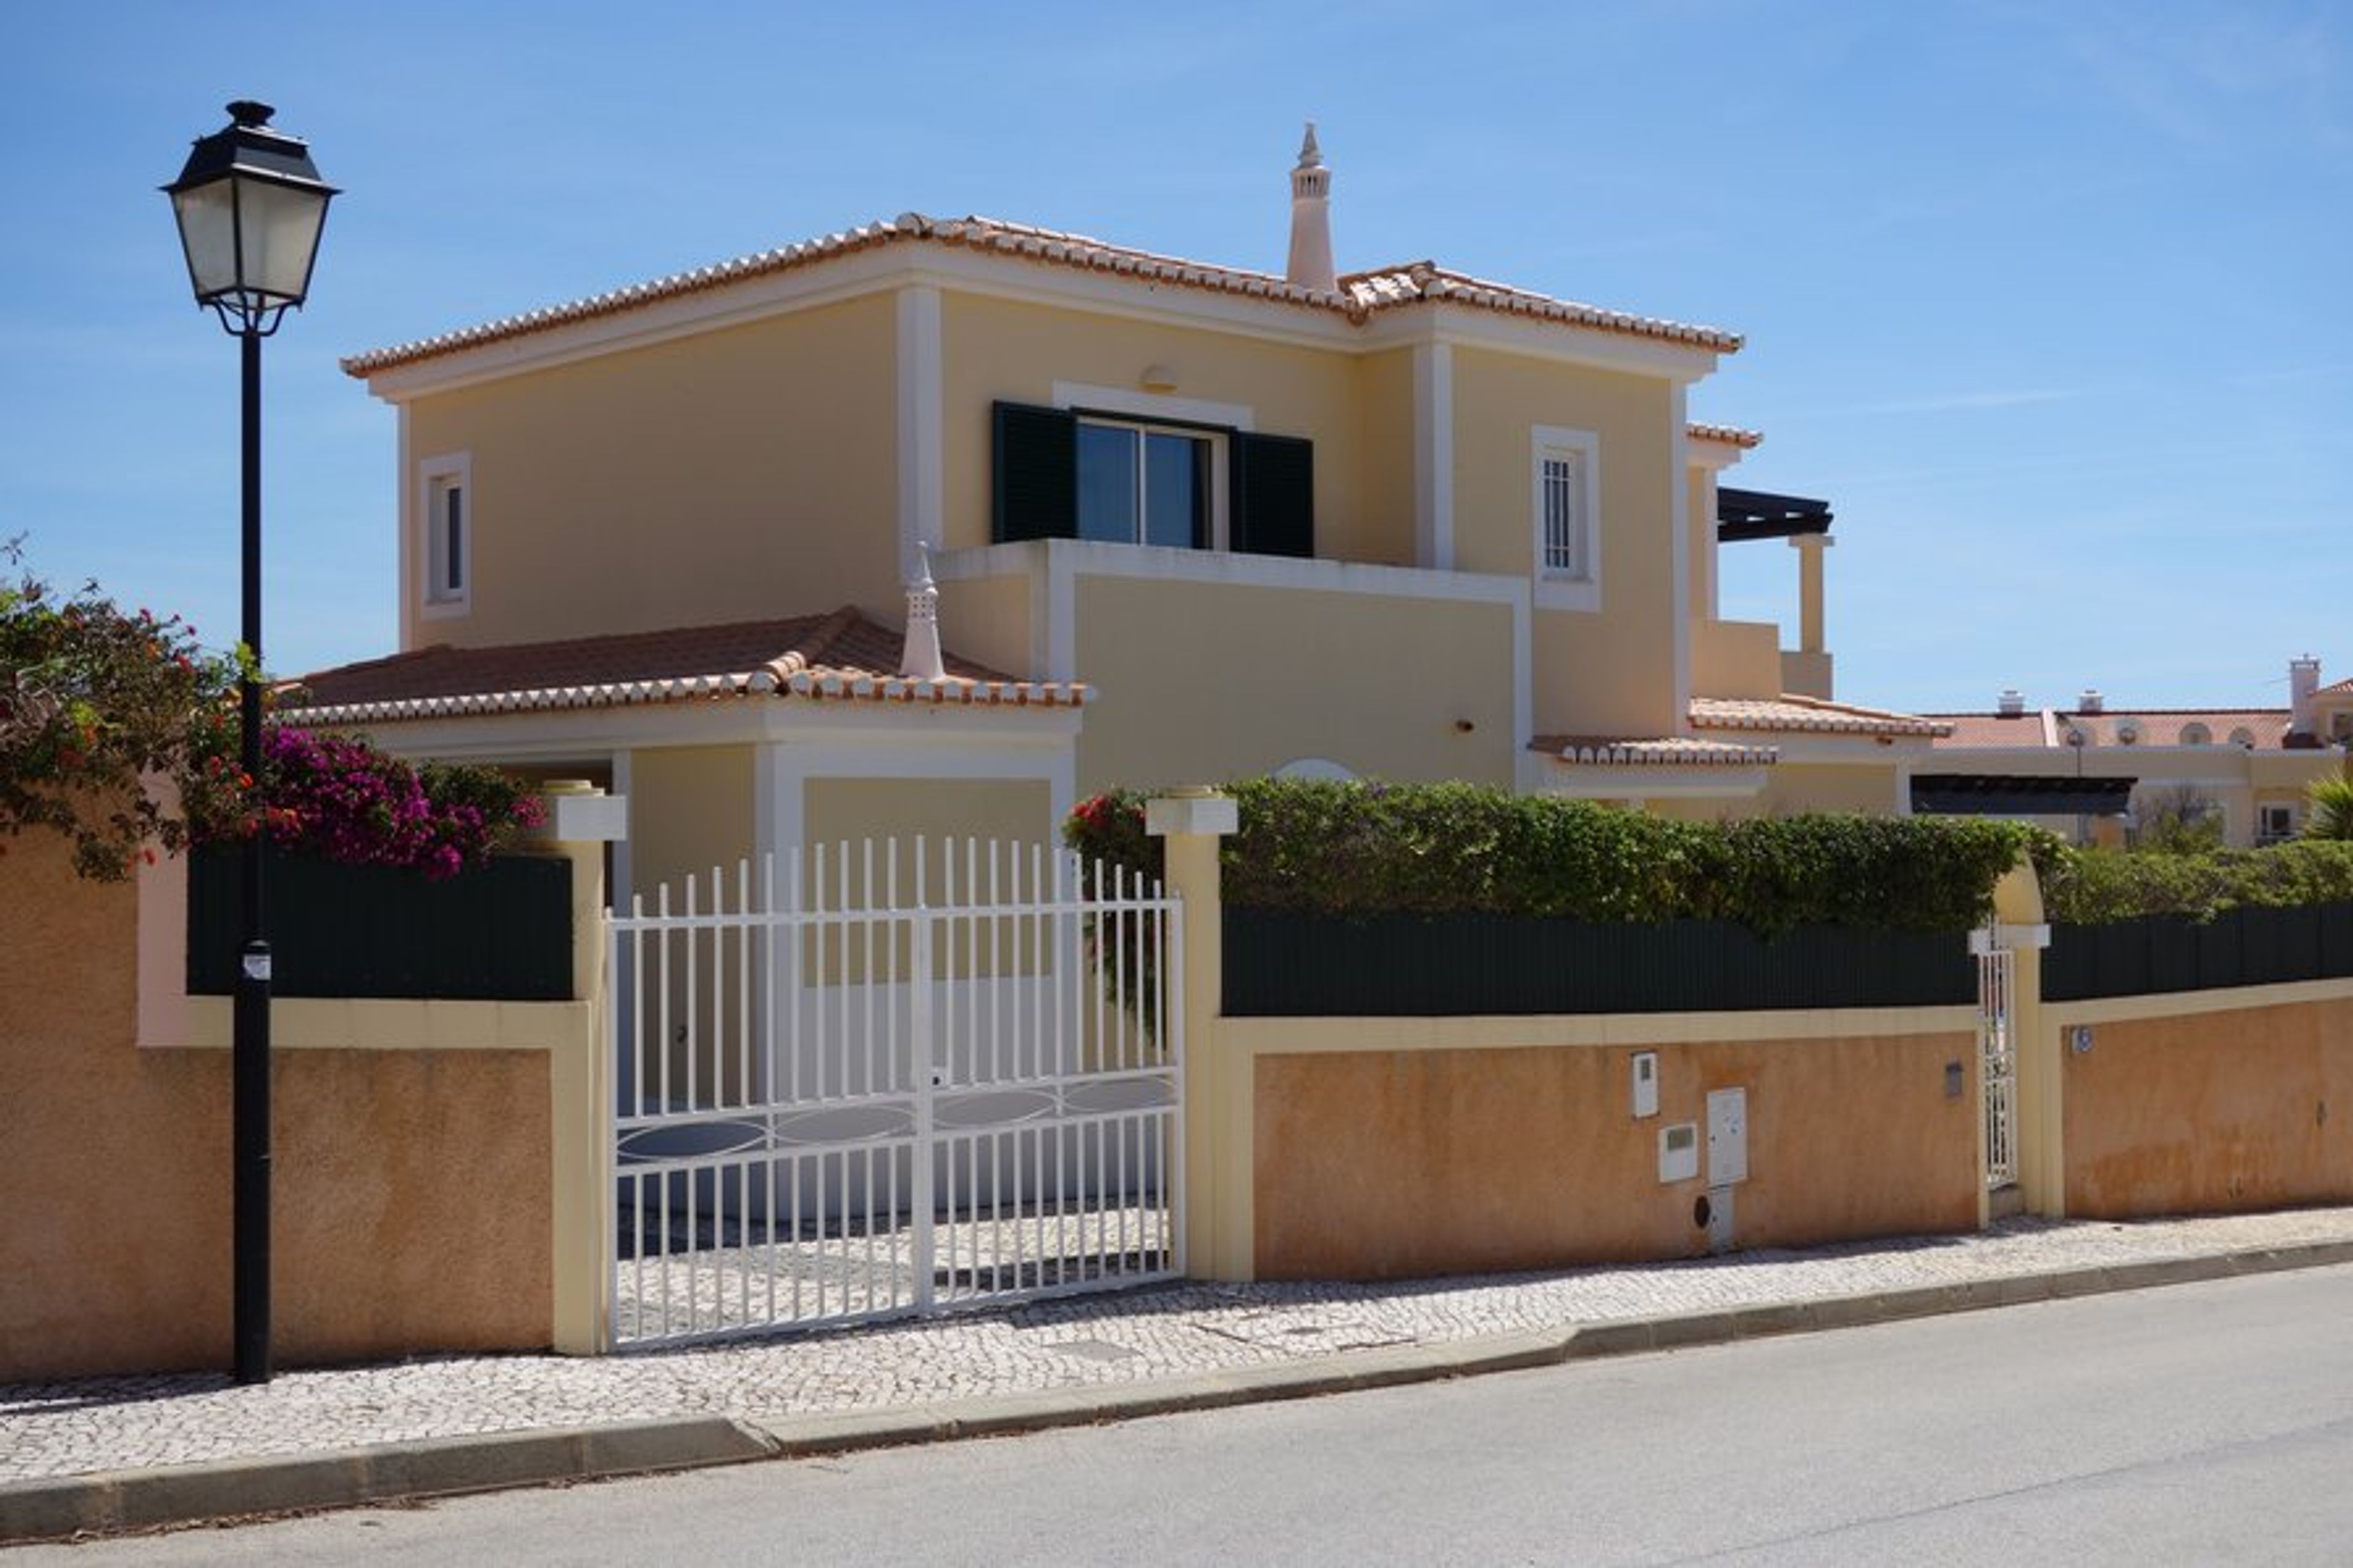 Casa Encantadora front and roadside of villa
